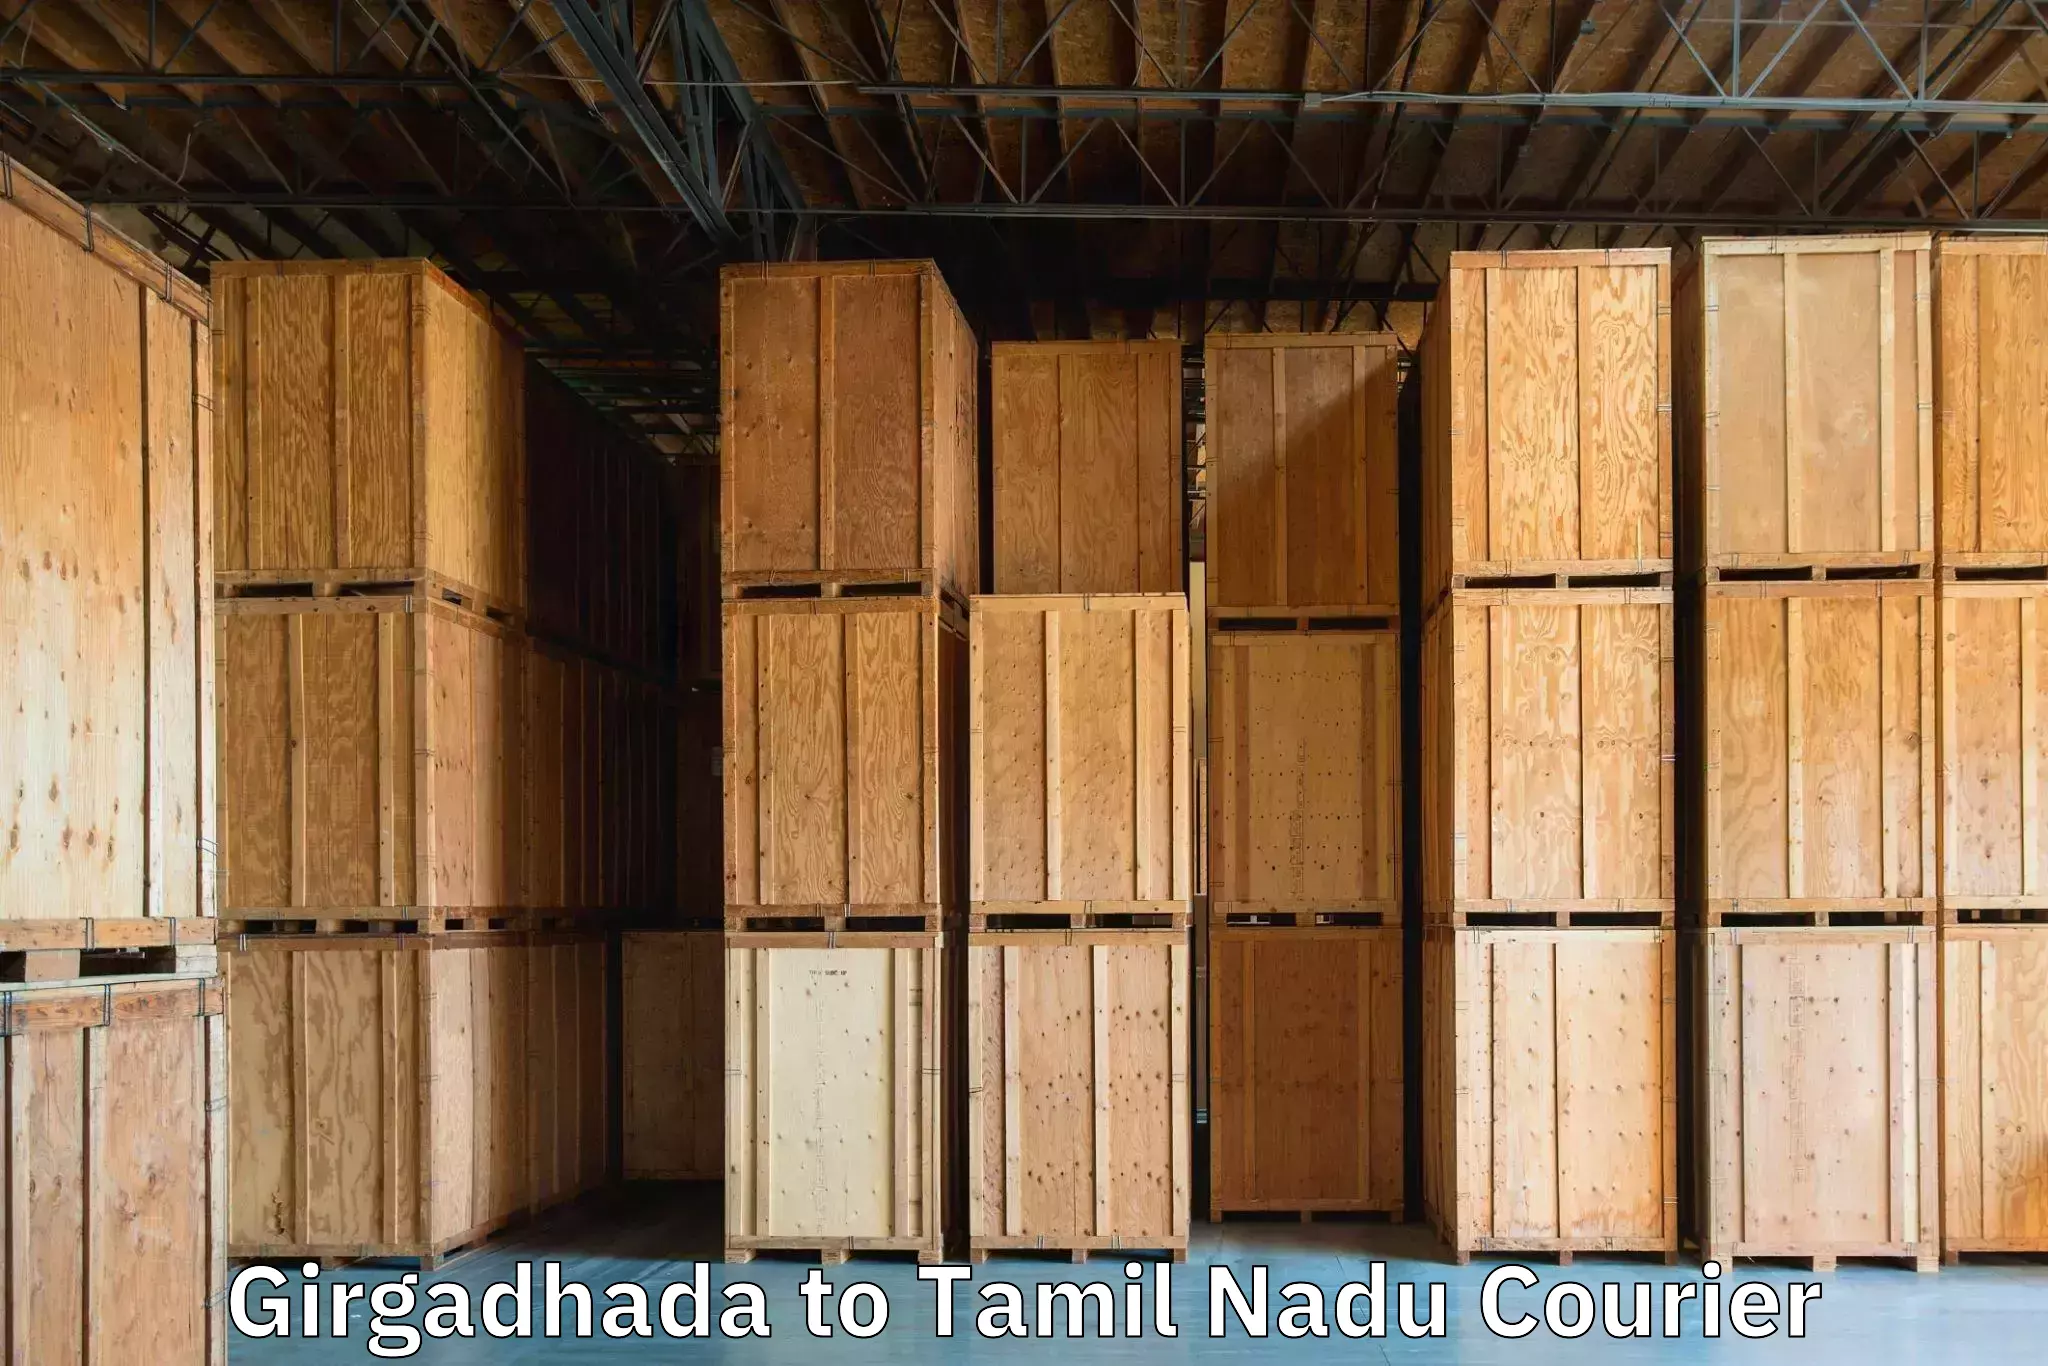 Rural baggage transport Girgadhada to Thiruvadanai